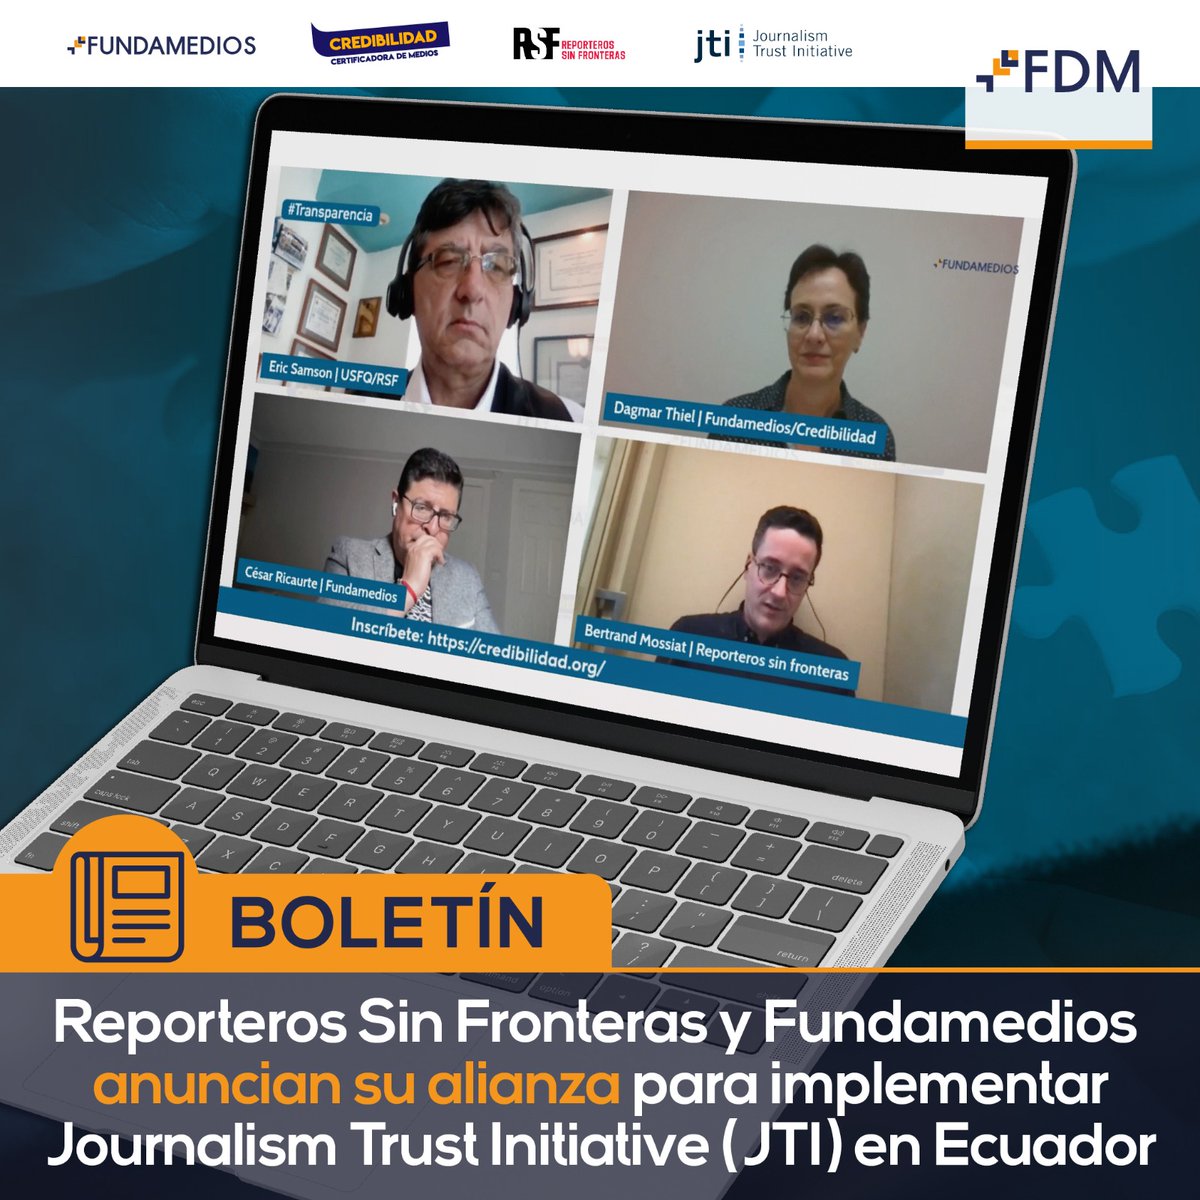 📑 #BOLETÍN | Reporteros Sin Fronteras (@RSF_inter @RSF_esp) y #Fundamedios, dos organizaciones líderes en la promoción de la libertad de prensa y el periodismo independiente, han anunciado su alianza estratégica para el lanzamiento de la Journalism Trust Initiative